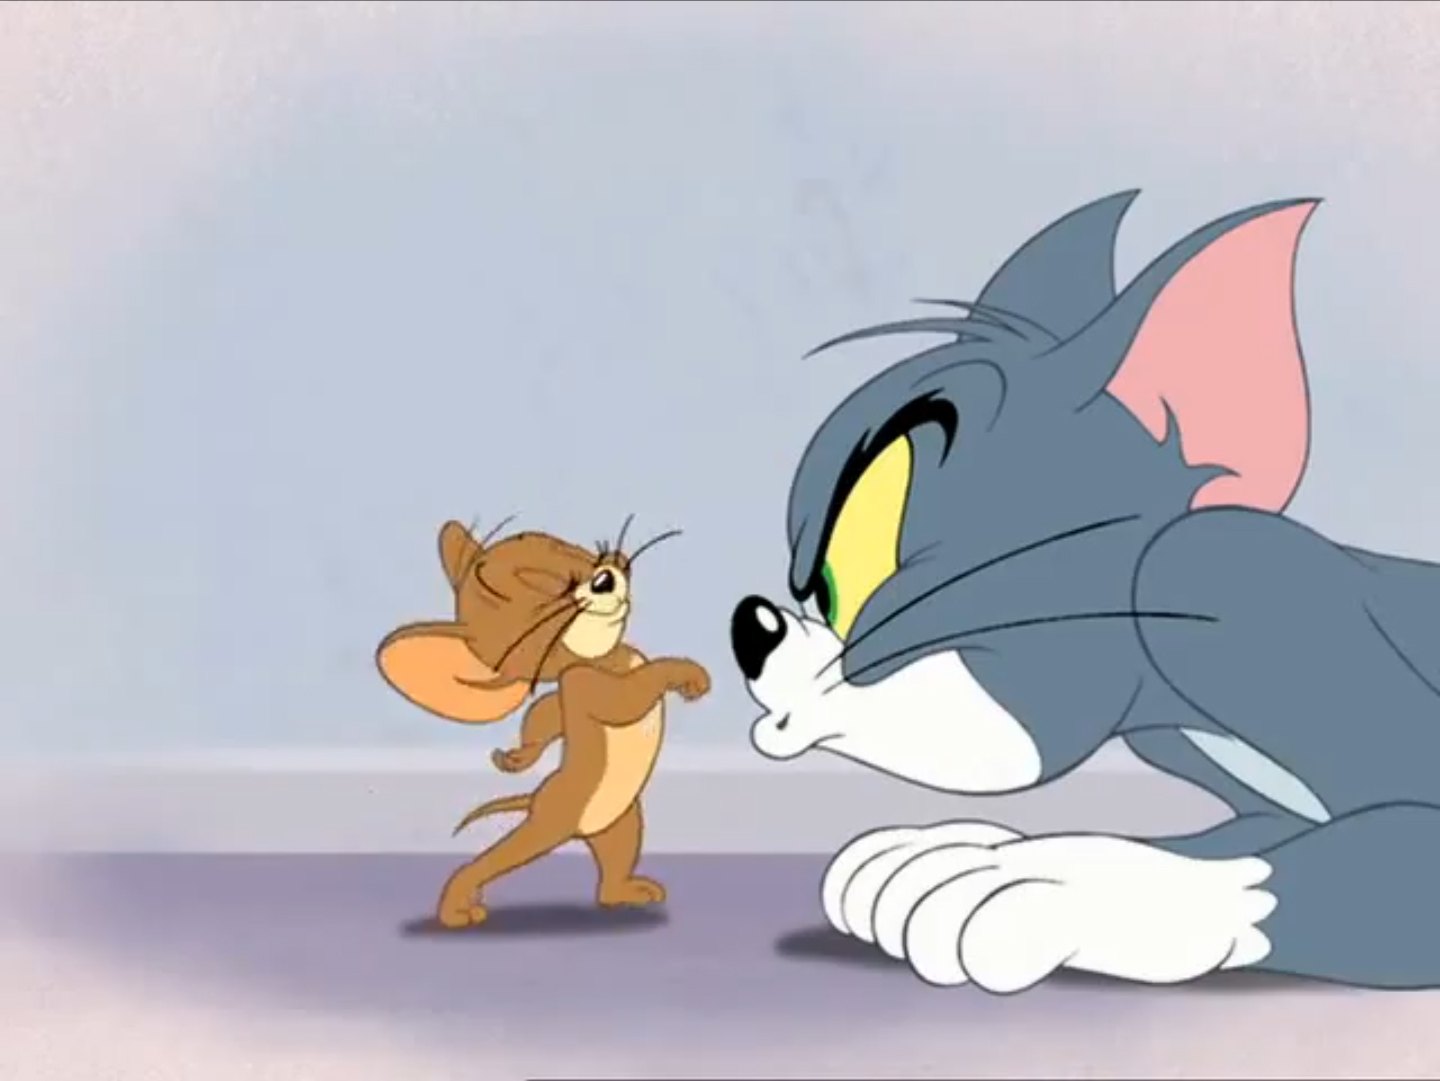 Jerry том и джерри. Том и Джерри Tom and Jerry. Том и Джерри Дисней. Том и Джерри (Tom and Jerry) 1940.